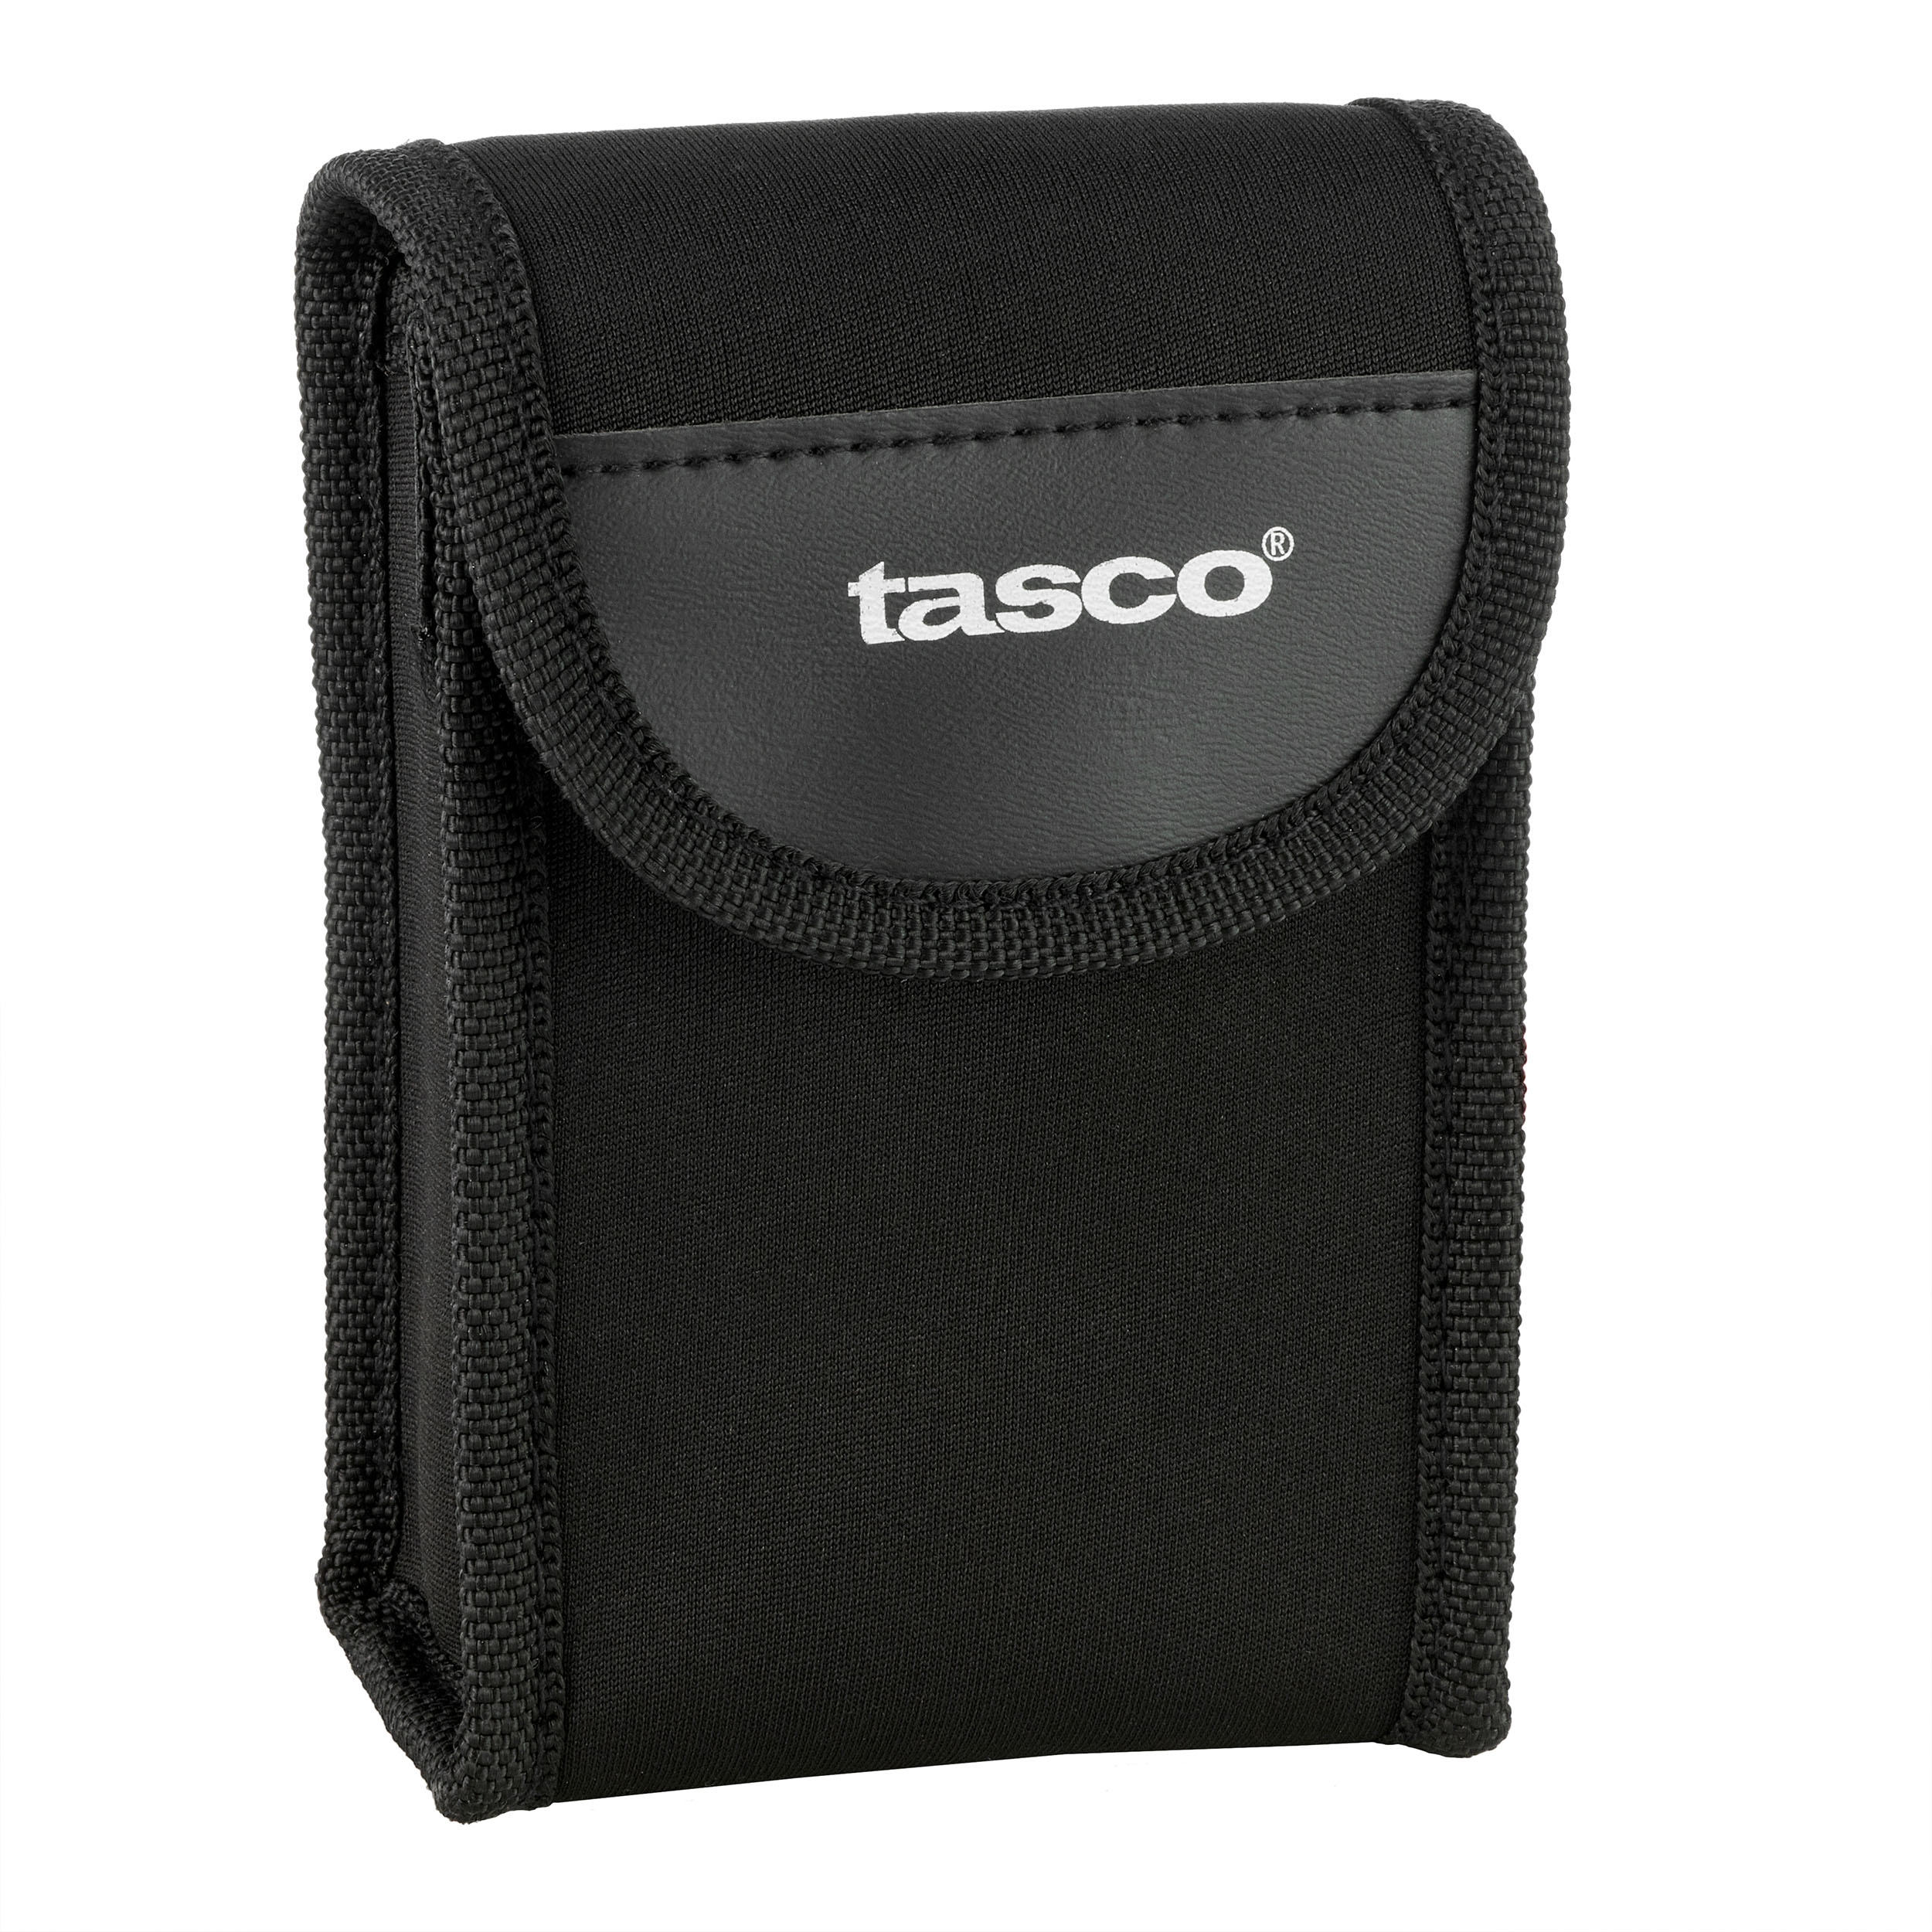 Adult Adjustable Hiking Binoculars - TASCO Essential - x10 Magnification 7/9